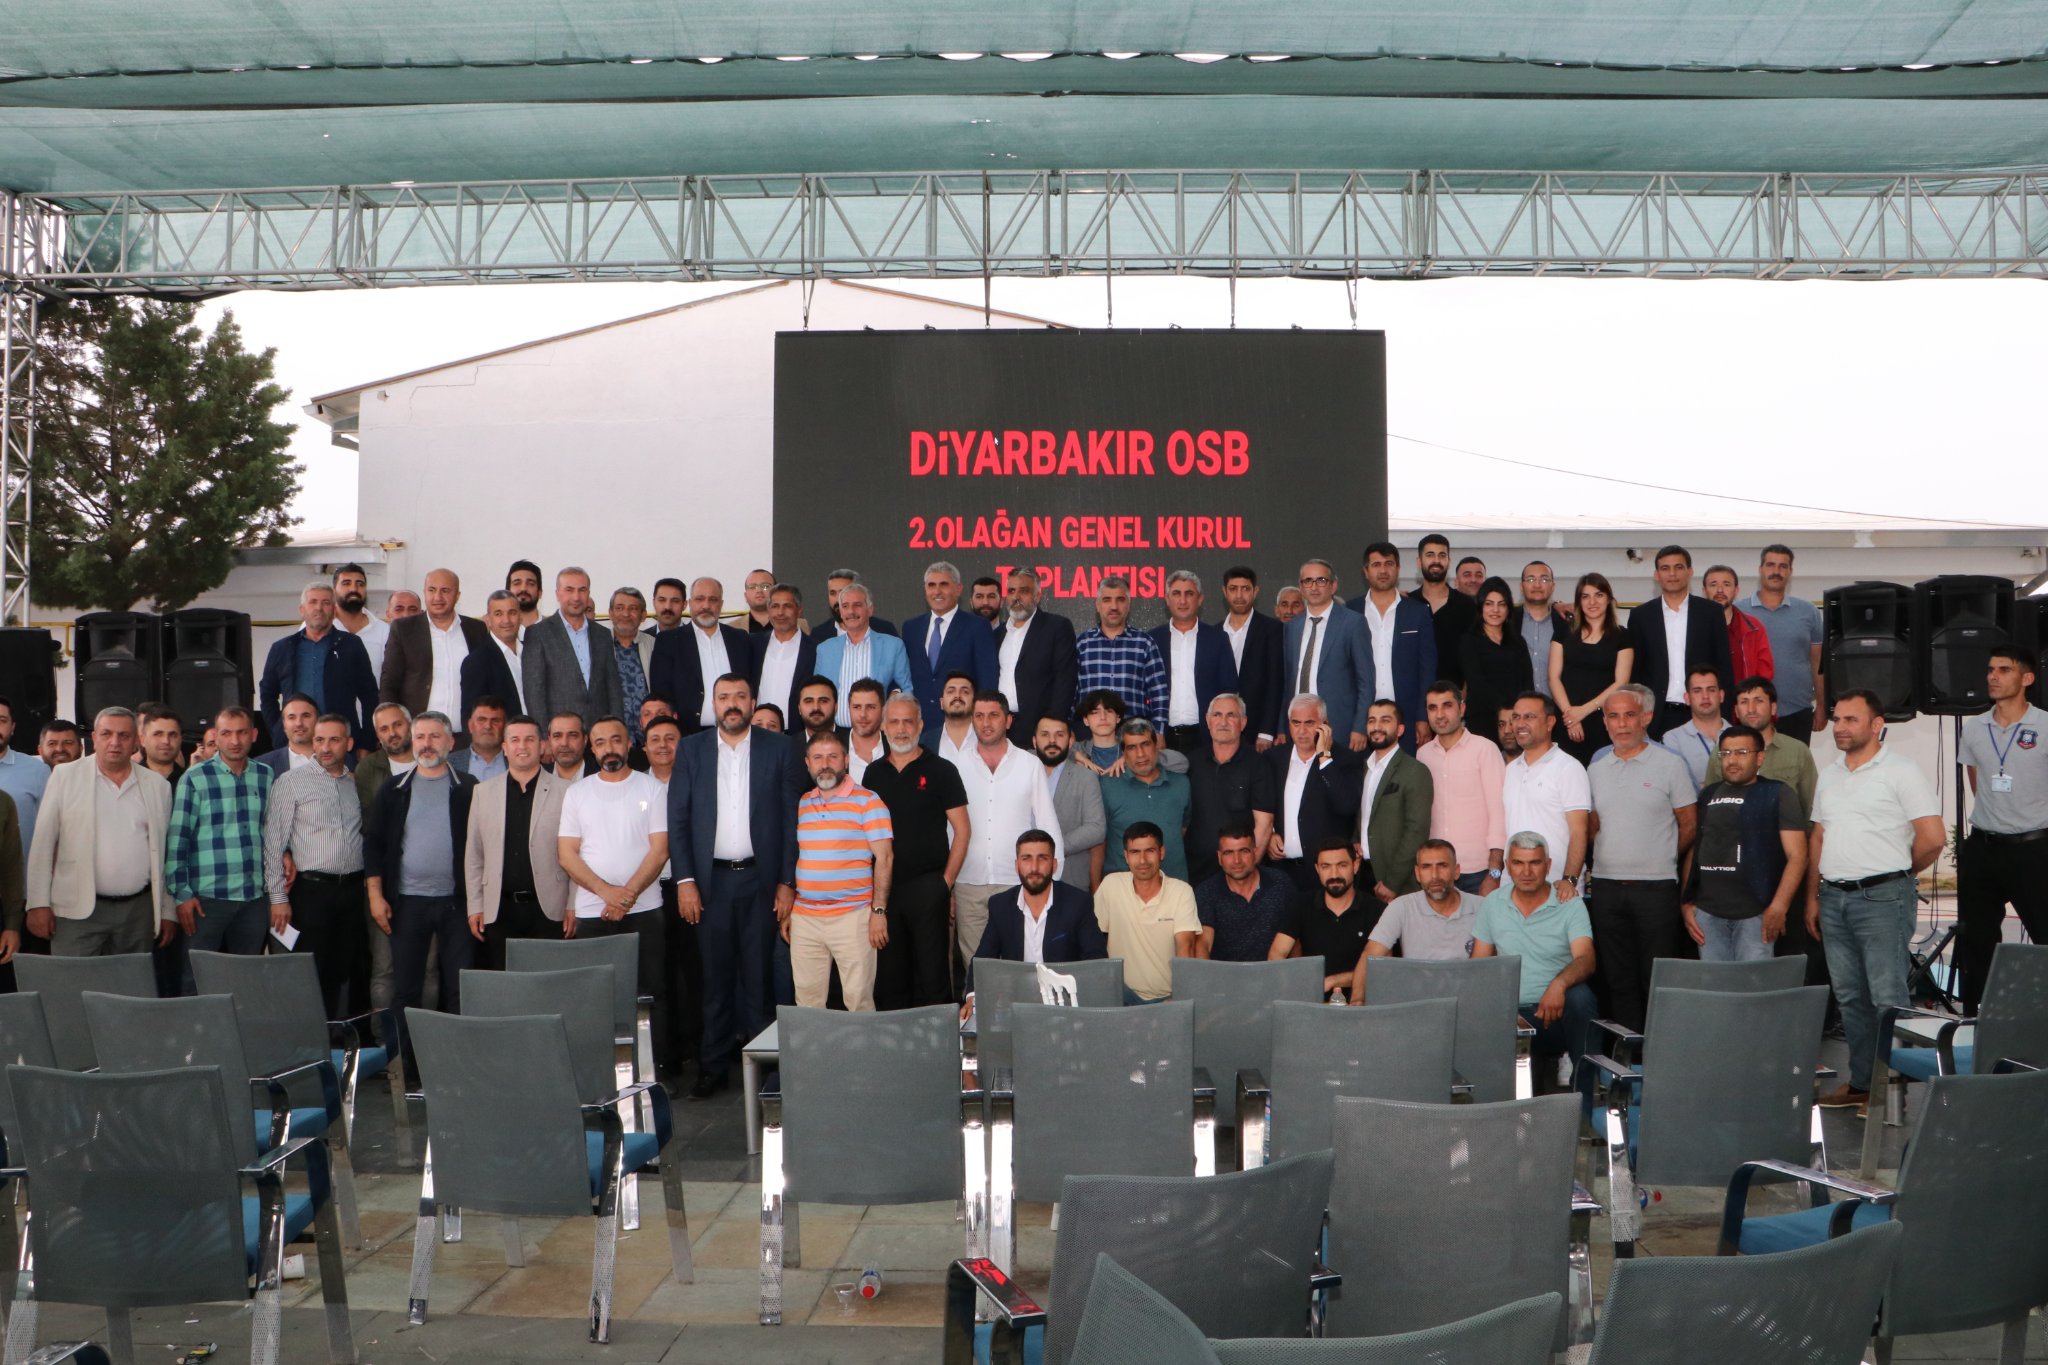 Diyarbakır Organize Sanayi Bölgesi'nin 14 Mayıs 2022 Cumartesi günü yapılan olağan kongerisinde Mustafa Fidan başkanlığındaki Mavi Liste alarak seçimlerden galip çıktı.